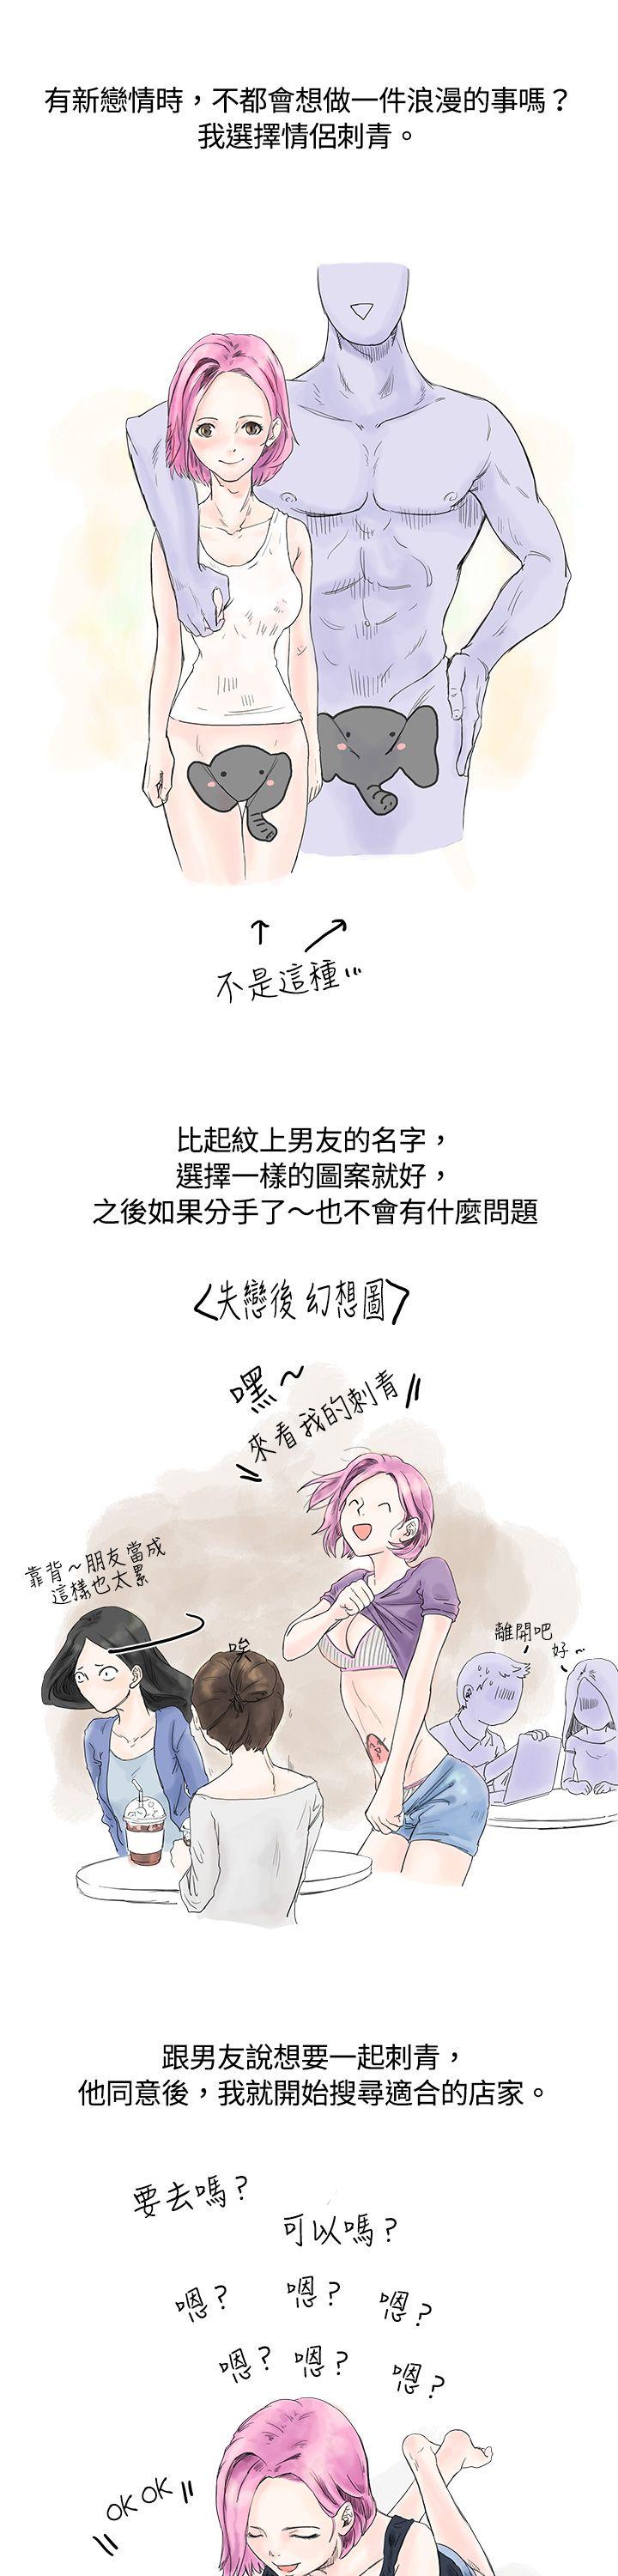 韩国污漫画 秘密Story 爱的刺青(上) 1